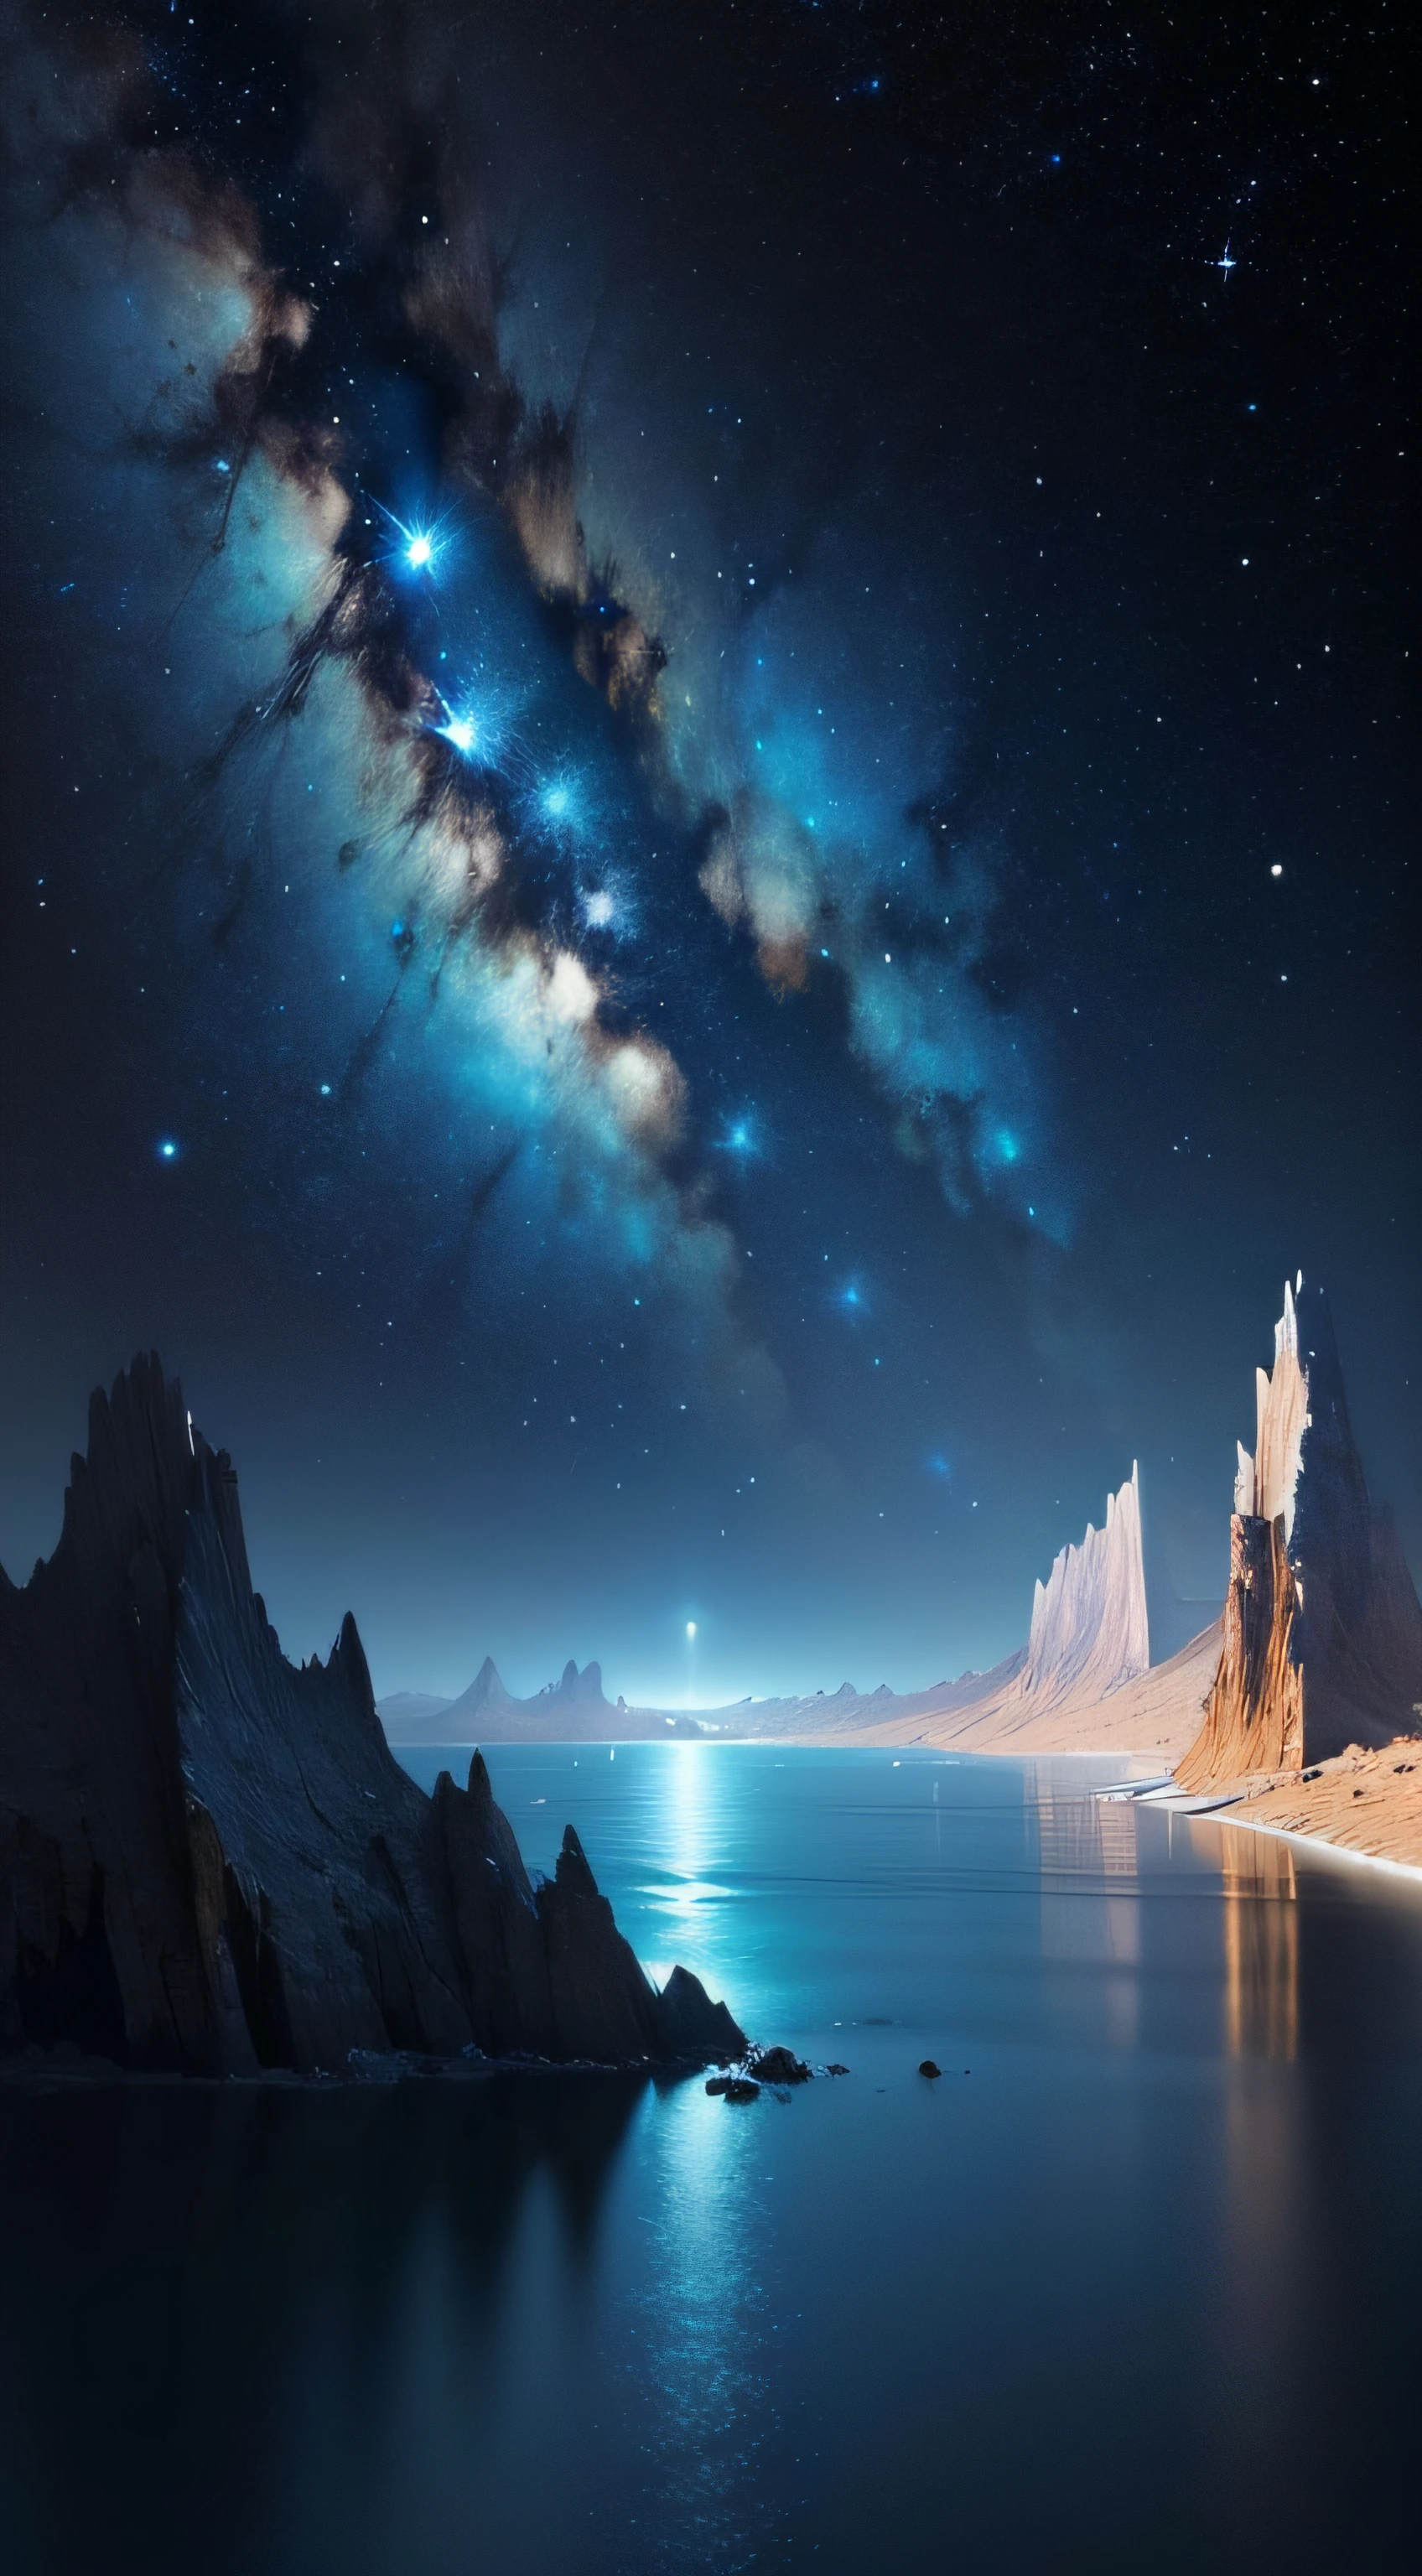 Ein bodenloses blaues Meer，Sternenhimmel mit Flüssen und entfernten Milchstraßen, galaktische Landschaft, episch wunderschön Weltraum Scifi, endloser Kosmos im Hintergrund, hochdetaillierte digitale Kunst, Weltraumlandschaft --auto